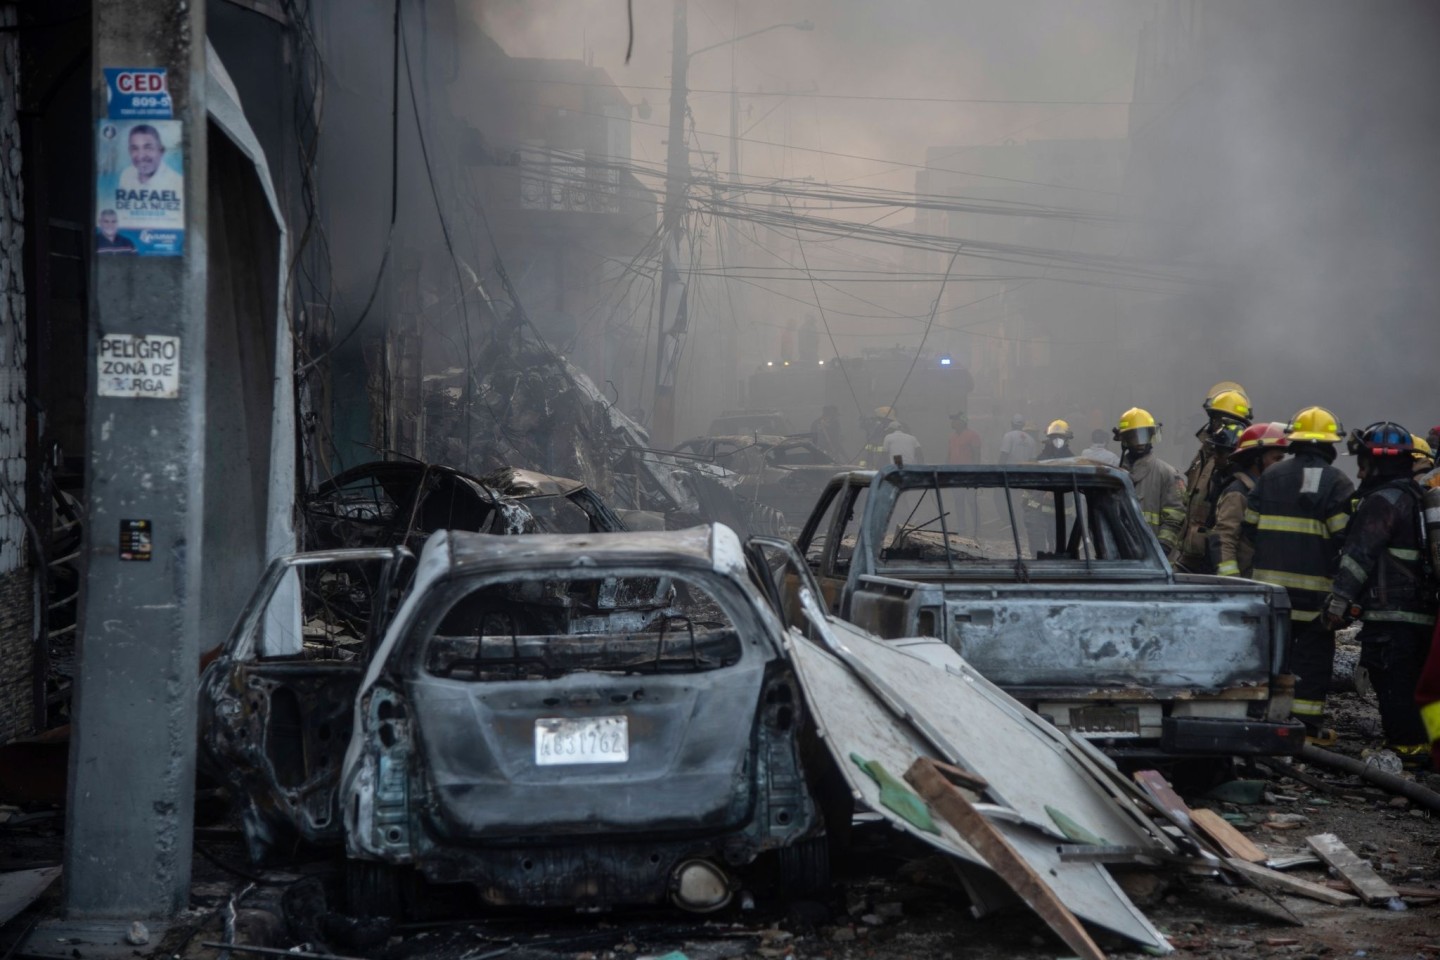 Feuerwehrleute arbeiten neben zerstörten Fahrzeugen nach einer starken Explosion, die ein Marktviertel mit vielen Geschäften erschüttert hat.